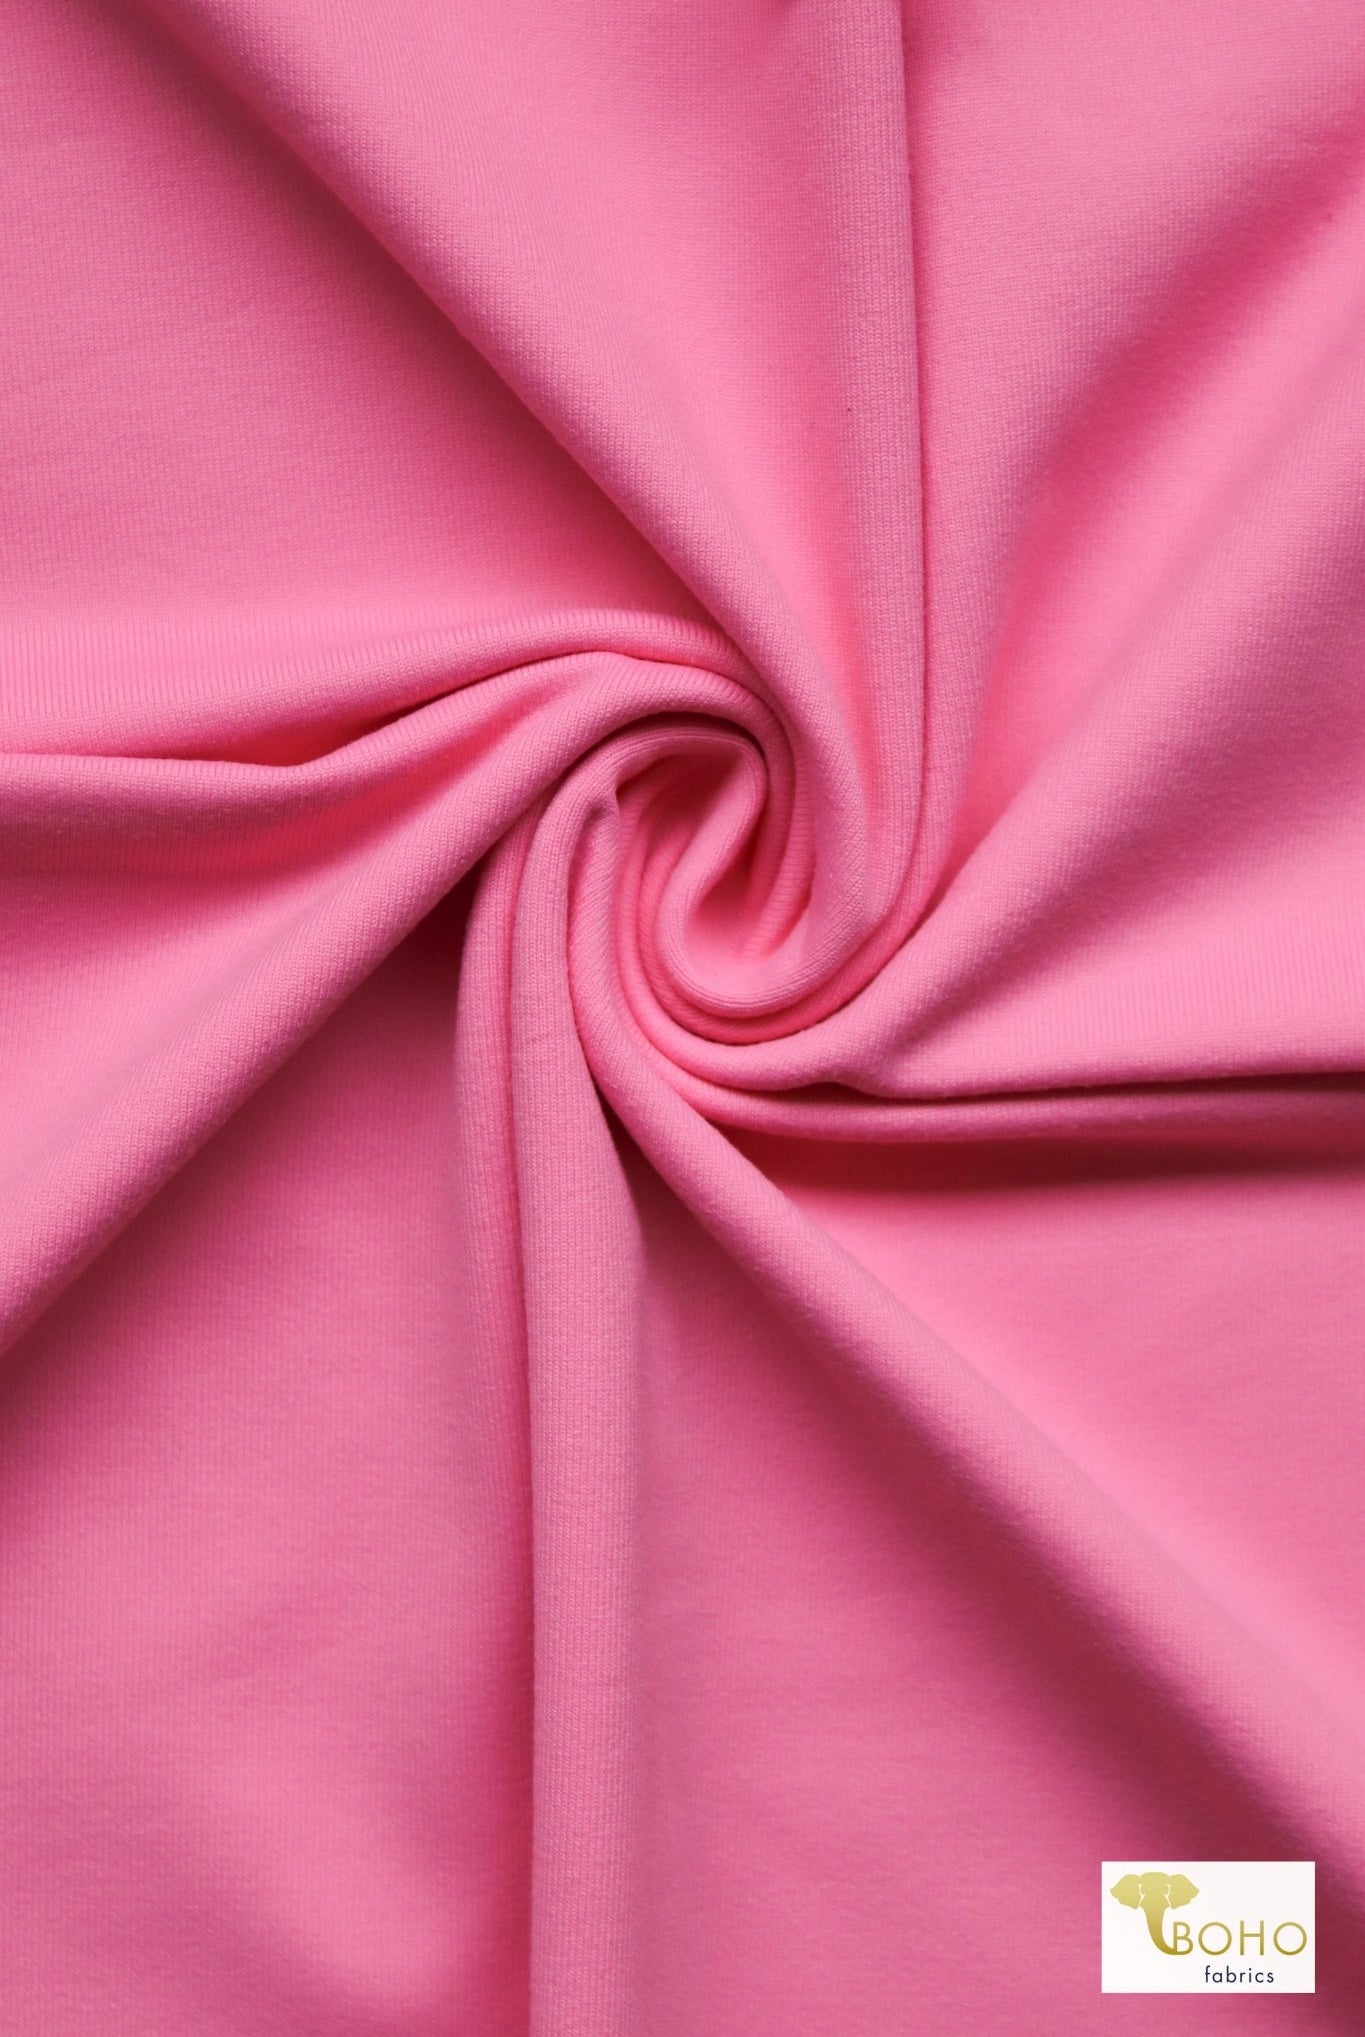 Pink Lemonade, Athletic Knit - Boho Fabrics